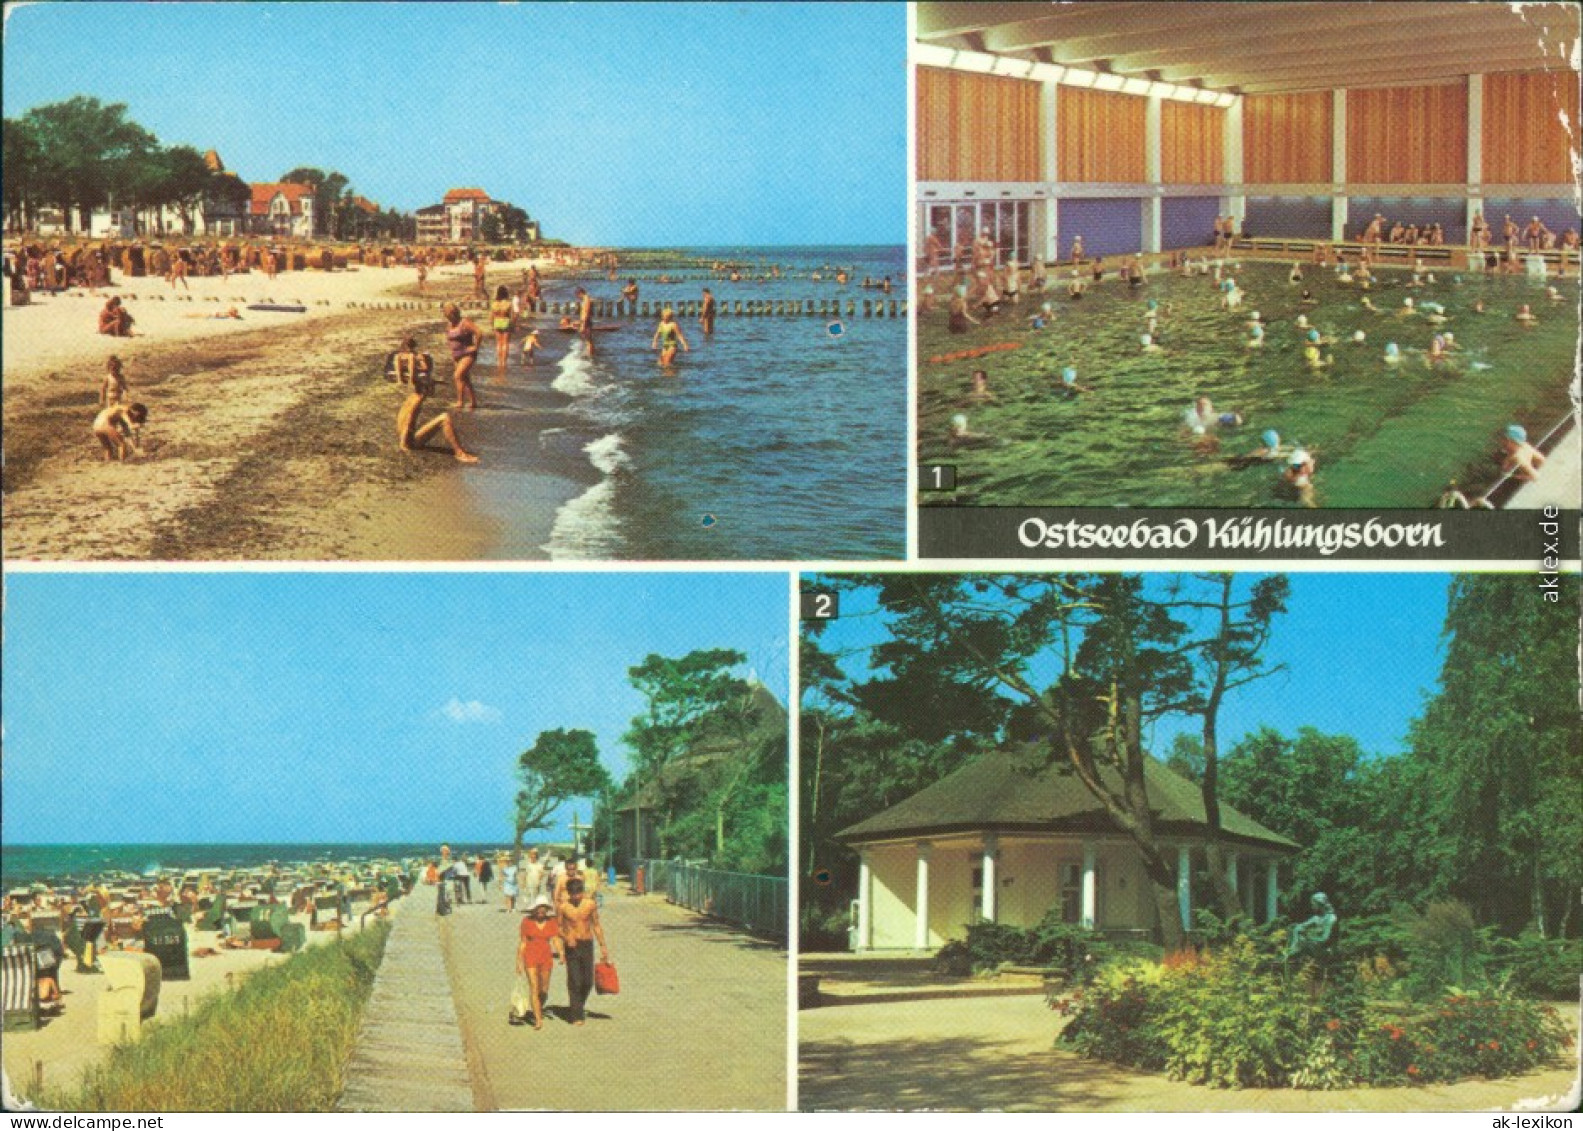 Kühlungsborn Strandpromenade, FDGB-Meerwasserschwimmhalle, Konzertgarten 1980 - Kuehlungsborn